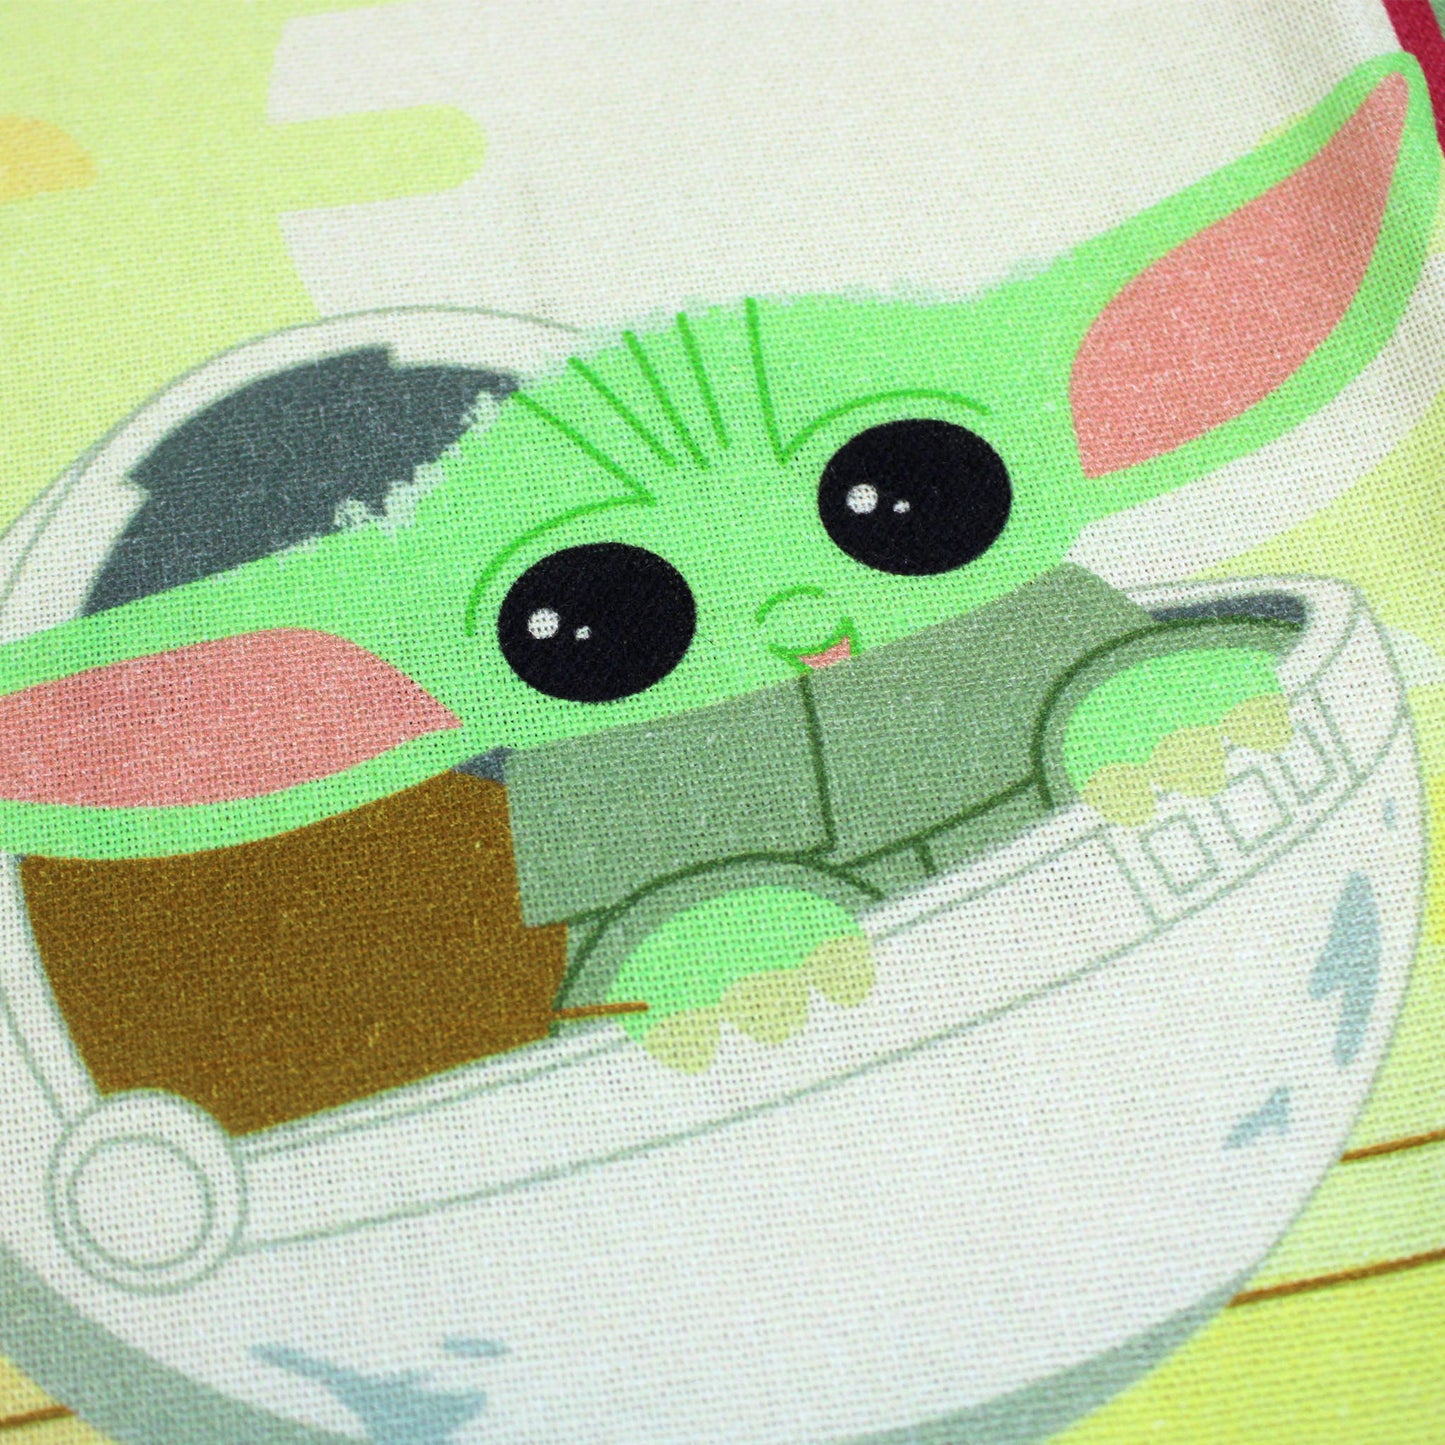 Kitchen Dish Towel - Star Wars Mandalorian Baby Yoda Grogu